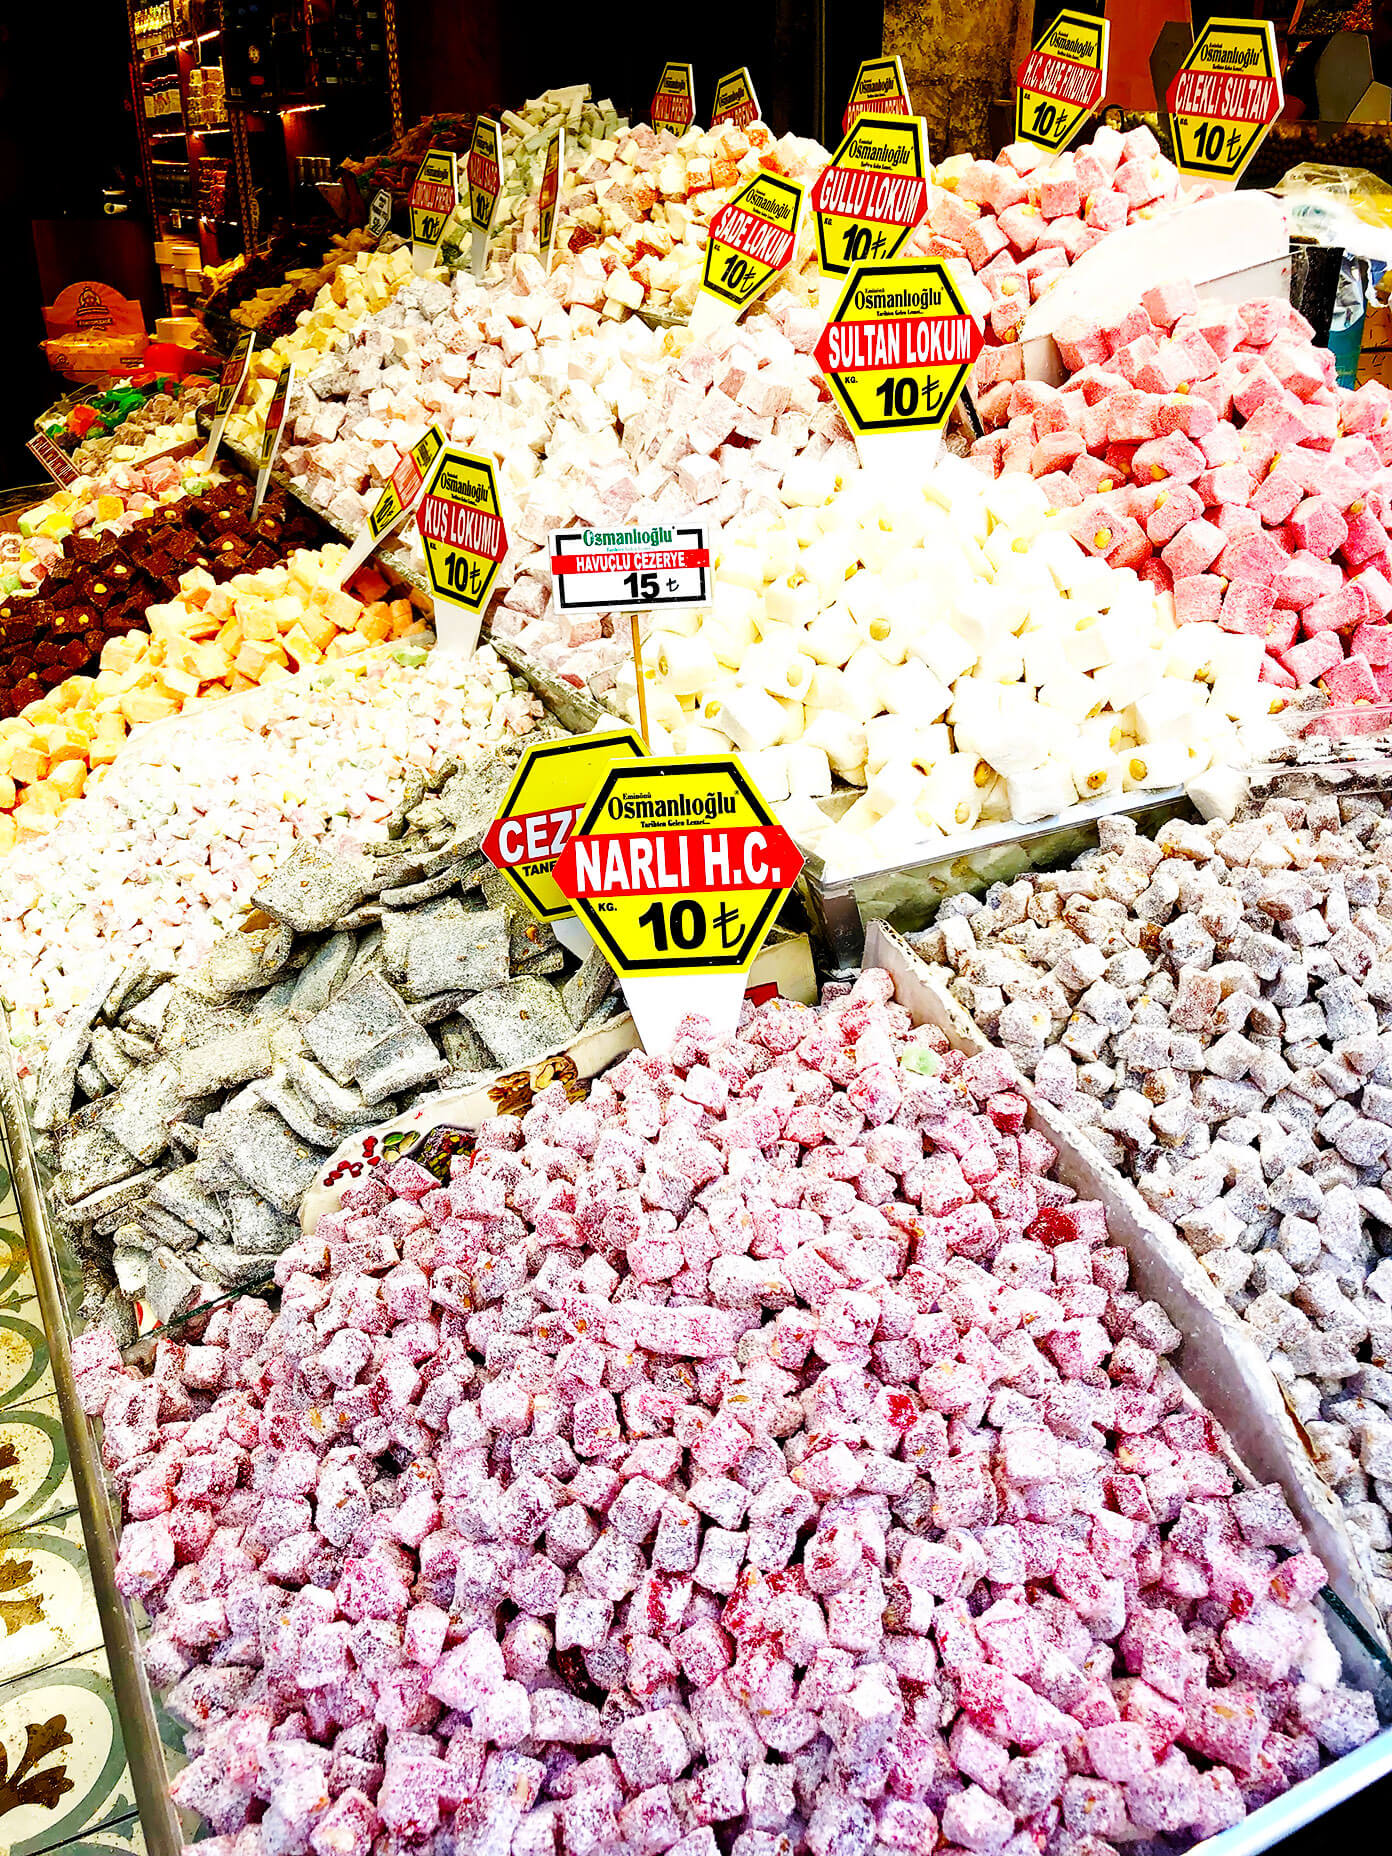 土耳其软糖香料市场伊斯坦布尔